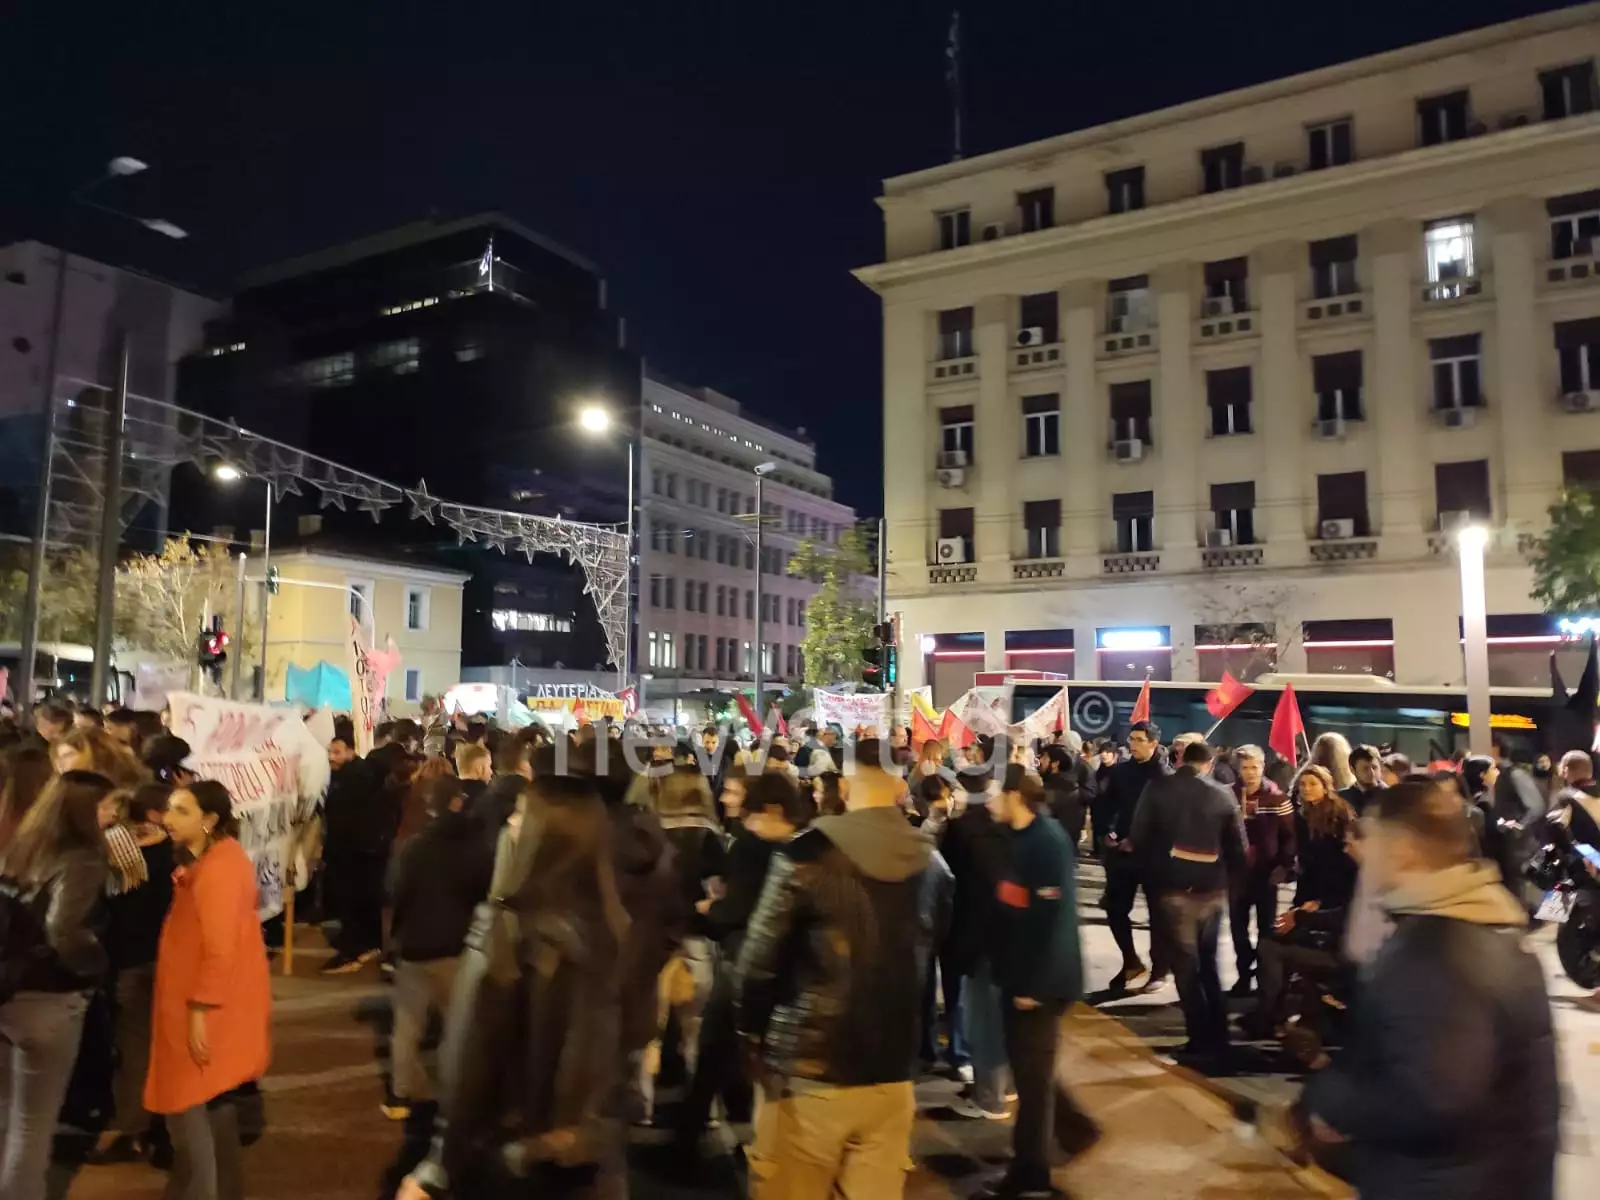 Αλέξανδρος Γρηγορόπουλος: Χιλιάδες άνθρωποι στους δρόμους σε Αθήνα και Θεσσαλονίκη για τη μνήμη του - Επεισόδια με προσαγωγές, μολότοφ και φωτιές σε κάδους ΦΩΤΟ - ΒΙΝΤΕΟ 